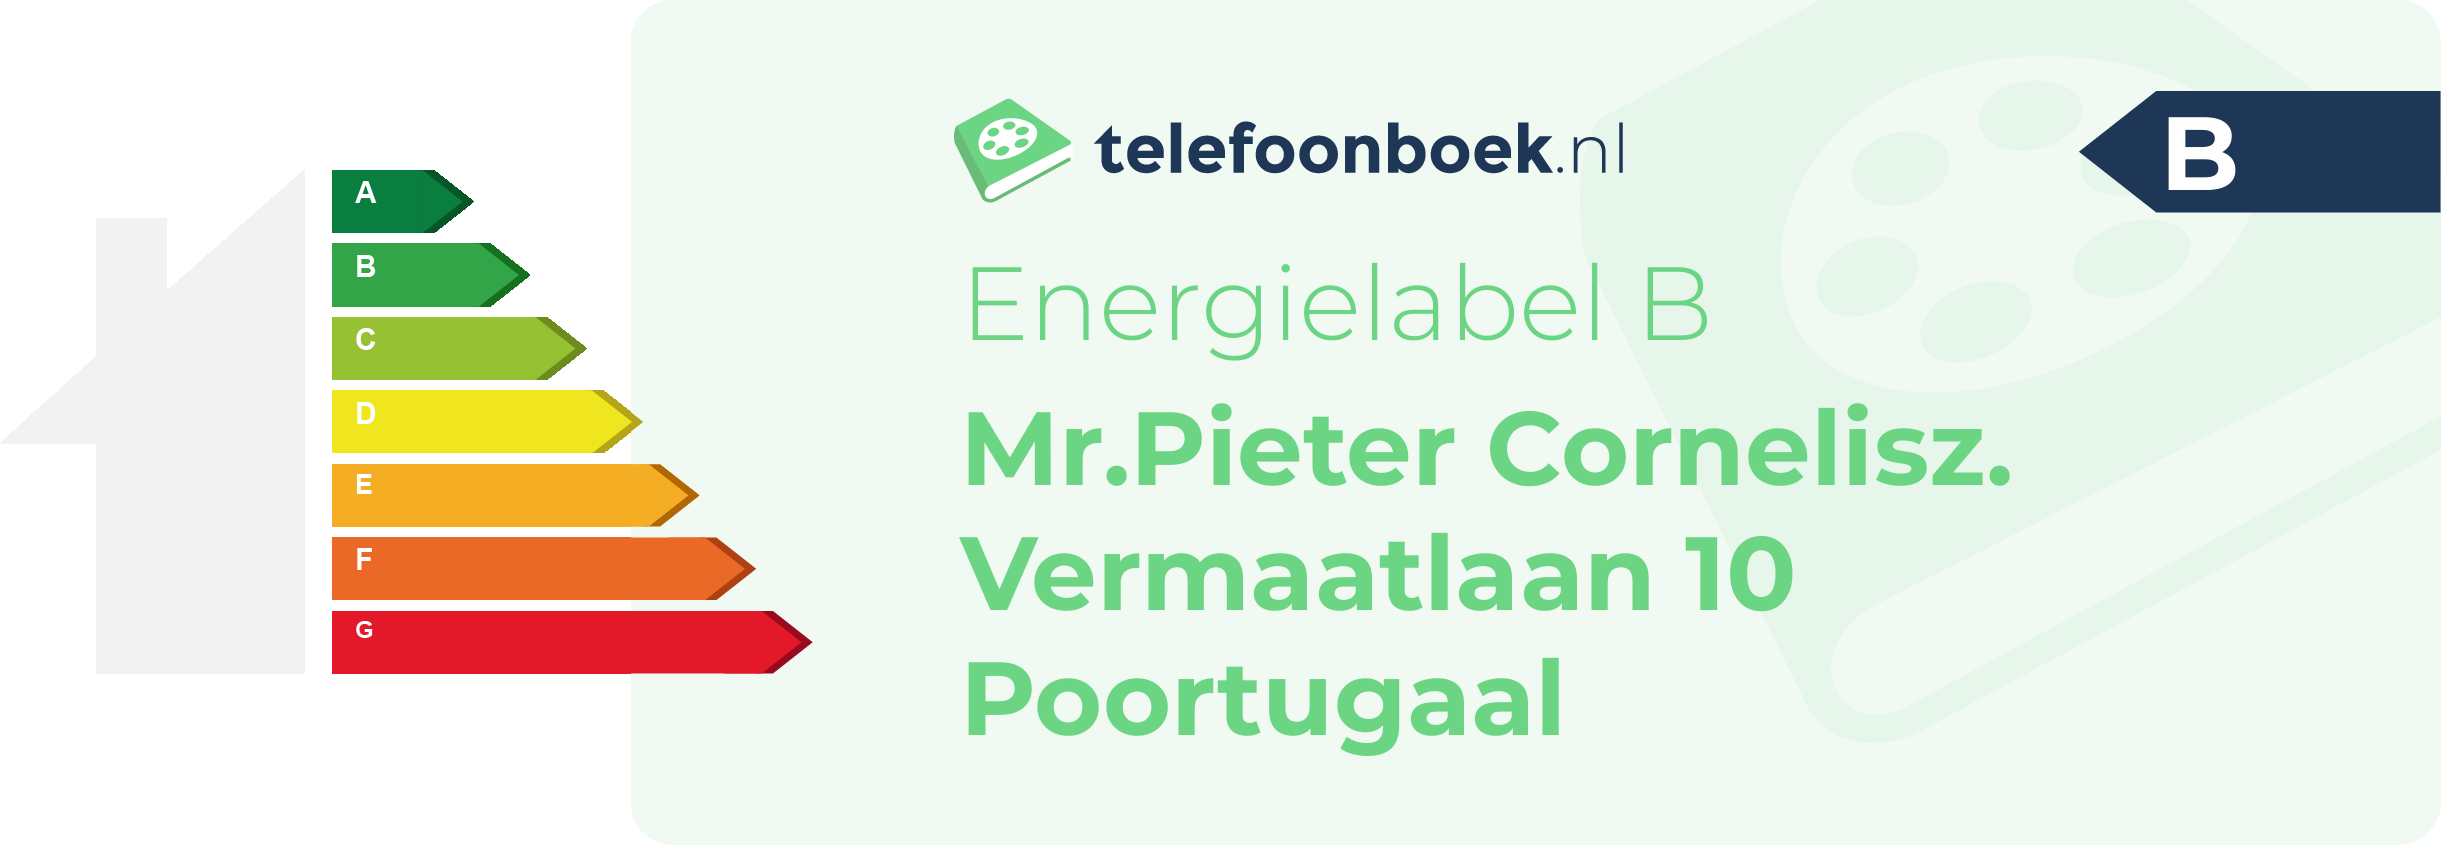 Energielabel Mr.Pieter Cornelisz. Vermaatlaan 10 Poortugaal